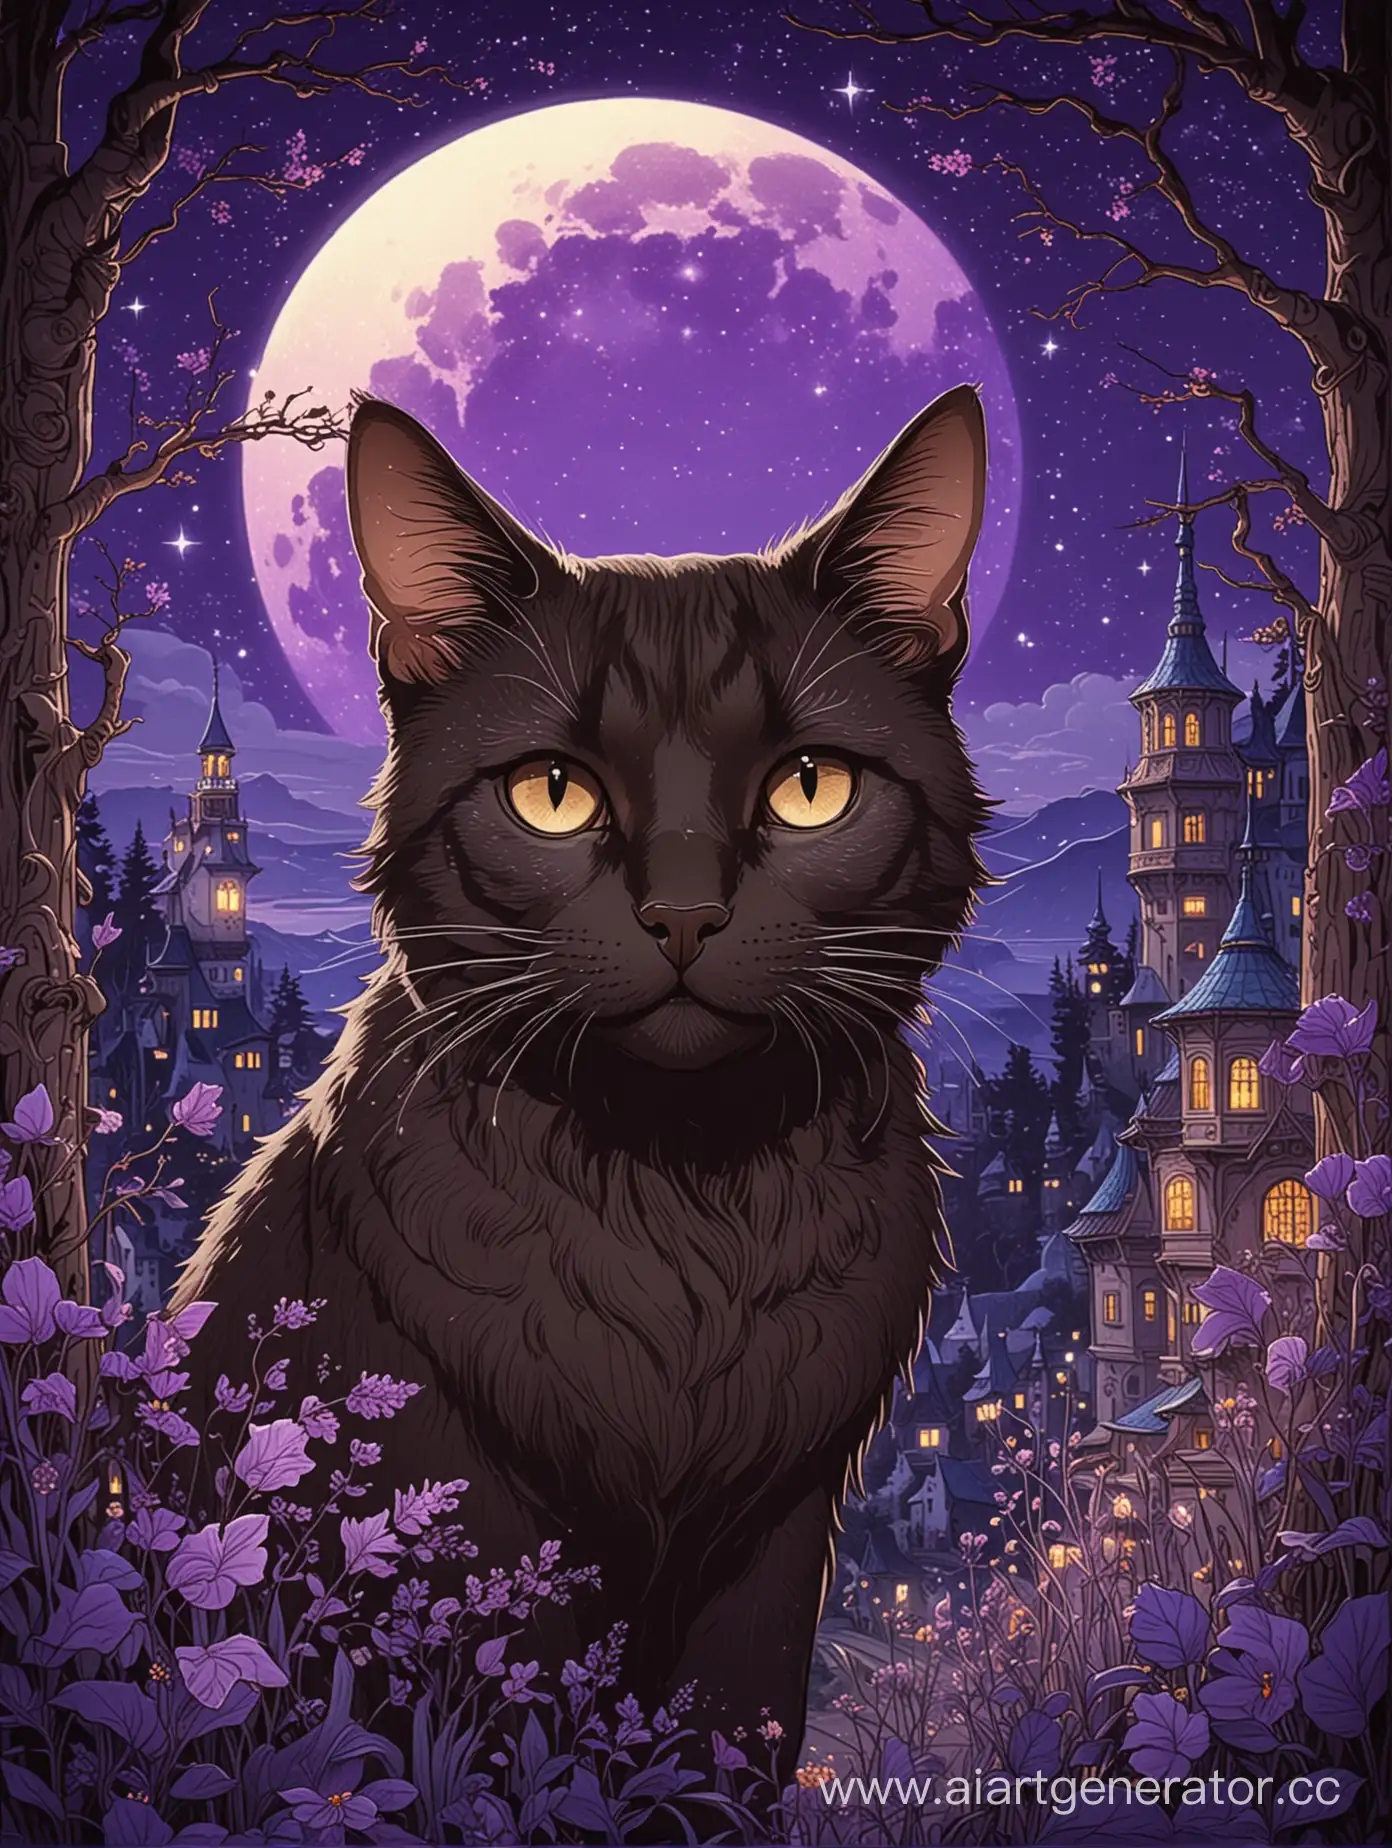 Bilibin-Style-Illustration-Mysterious-Cat-in-Purple-Night